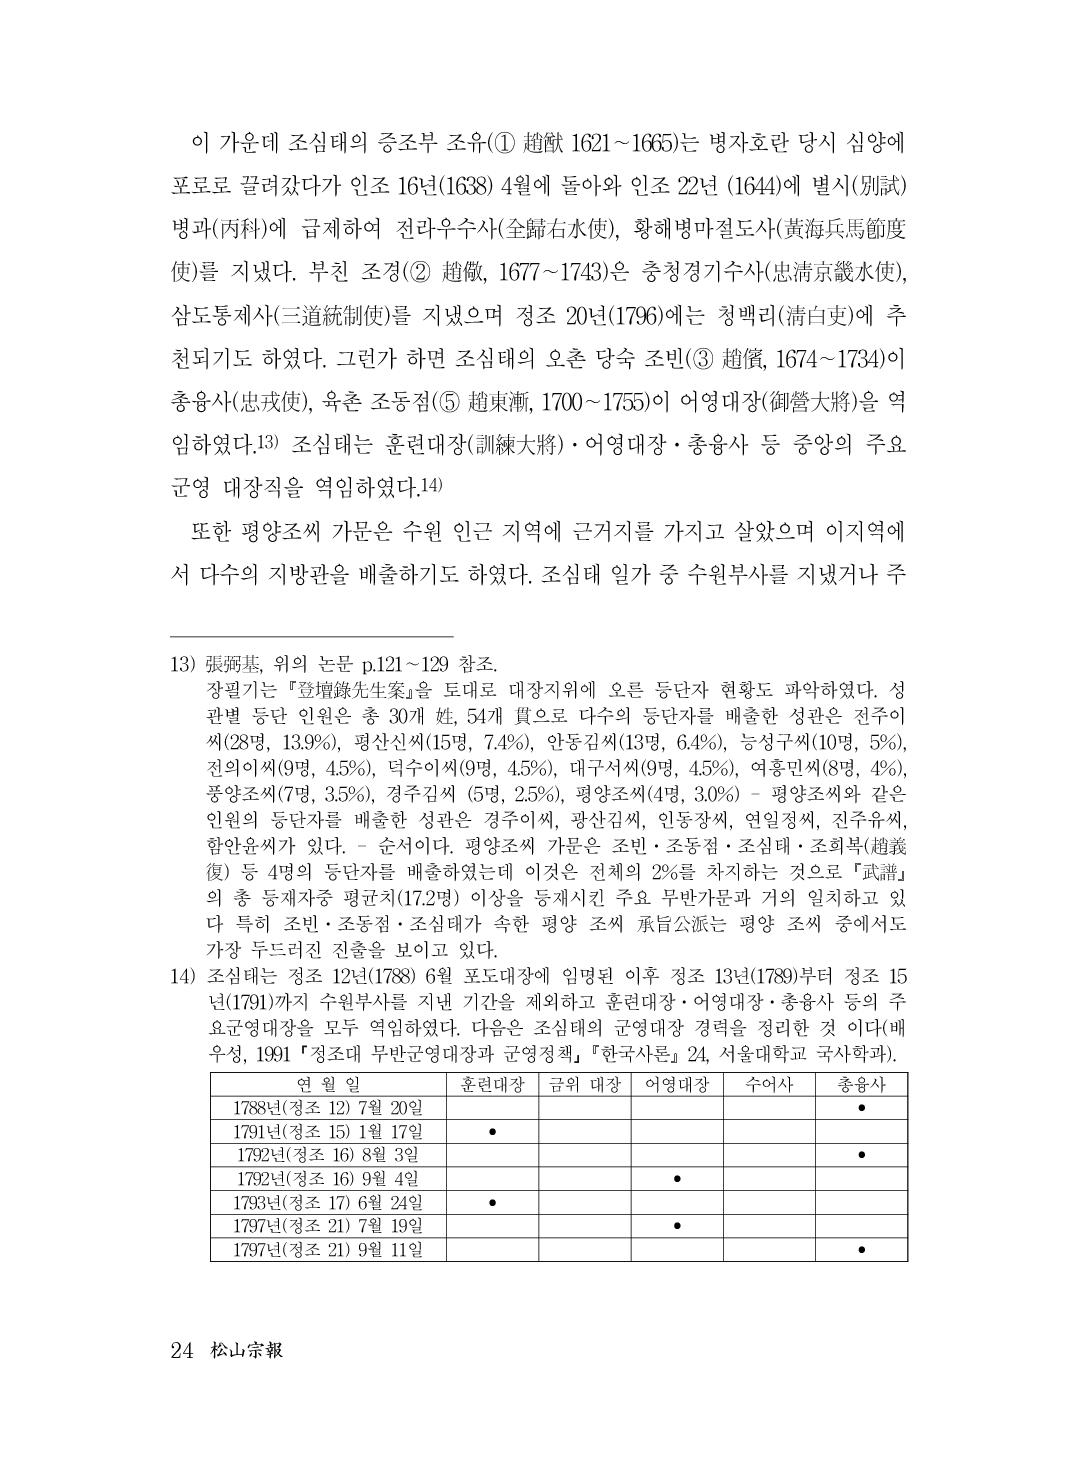 (전체) 송산종보(27호)(최종)_25.jpg